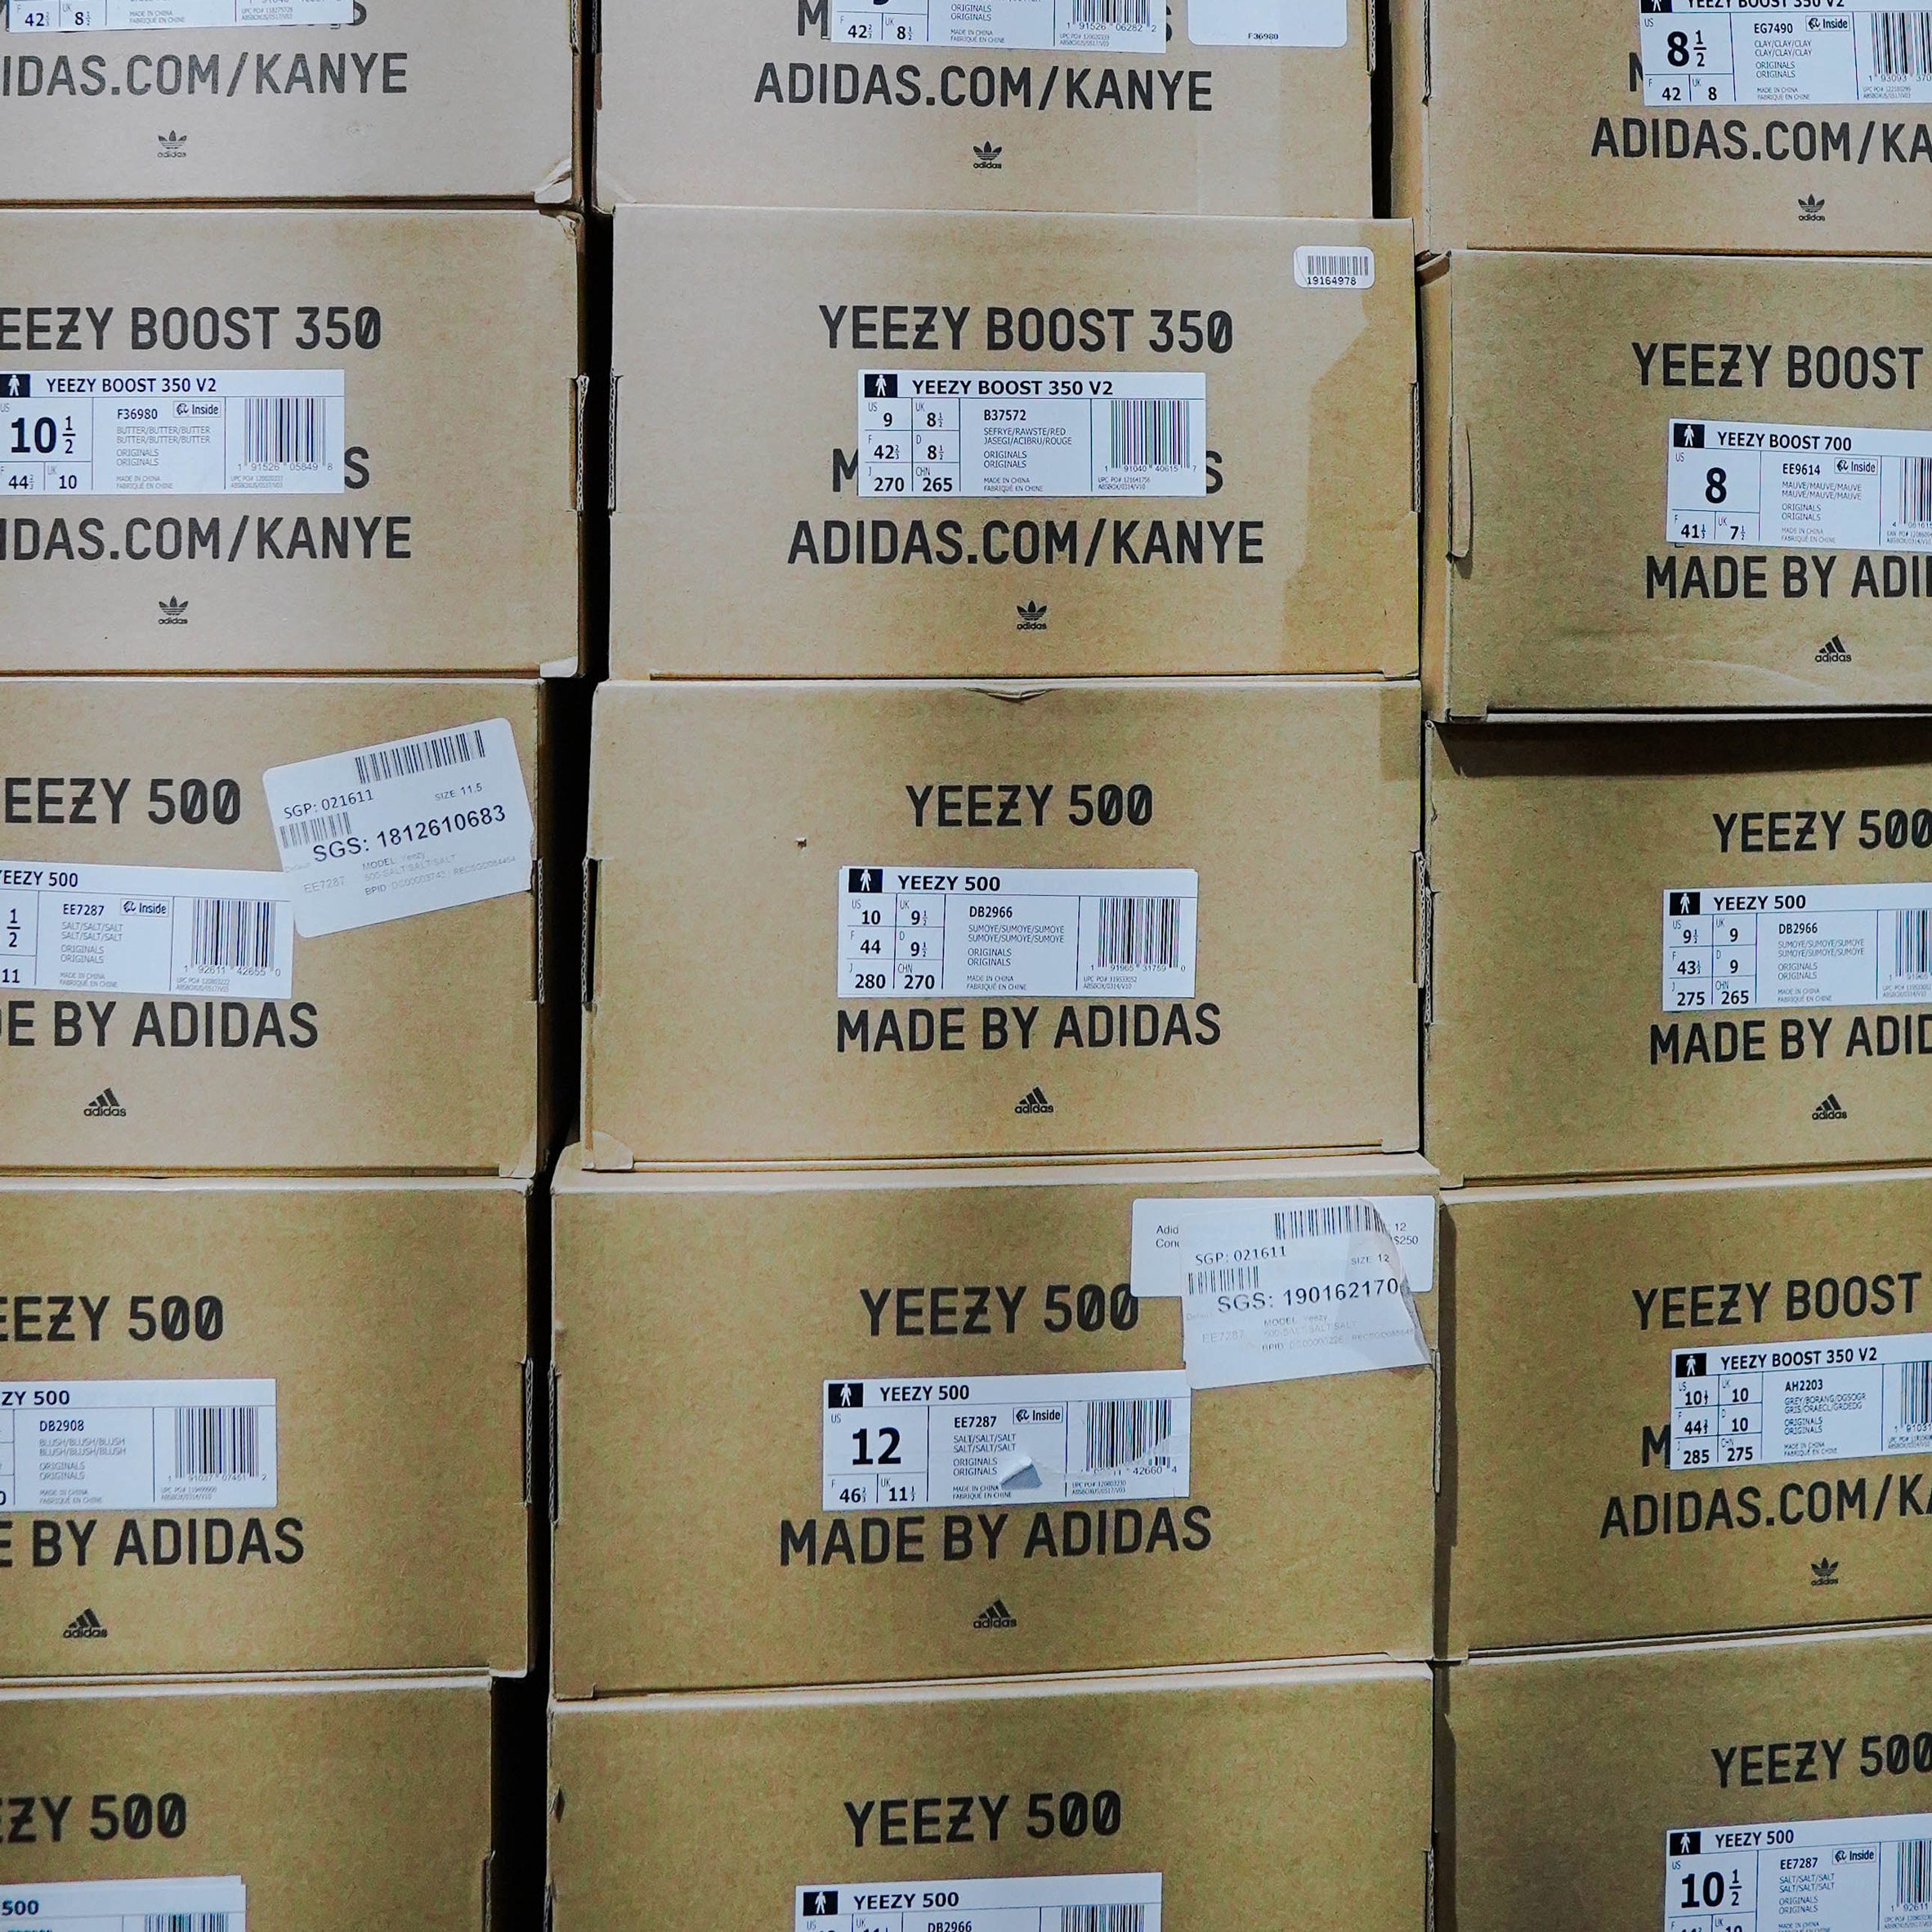 Een deel Prehistorisch spellen Adidas to sell Yeezy stock and donate portion of proceeds to charity